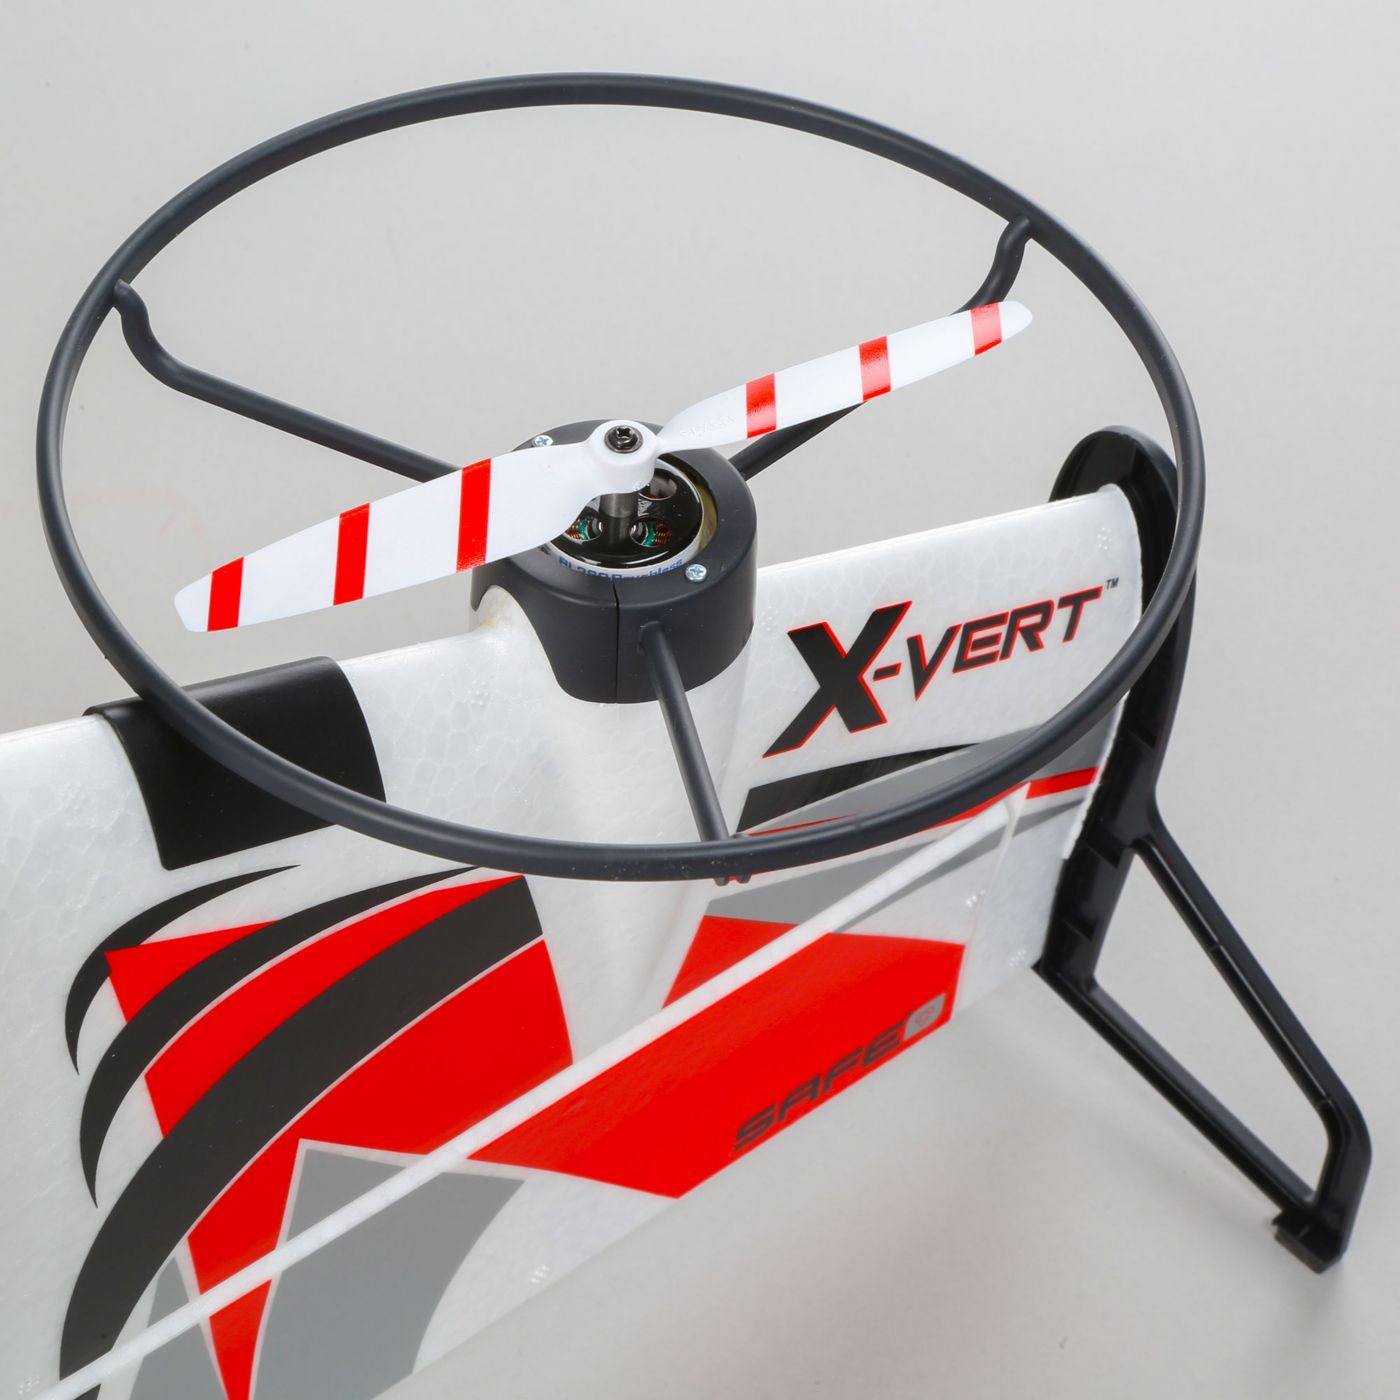 X-Vert VTOL E-flite